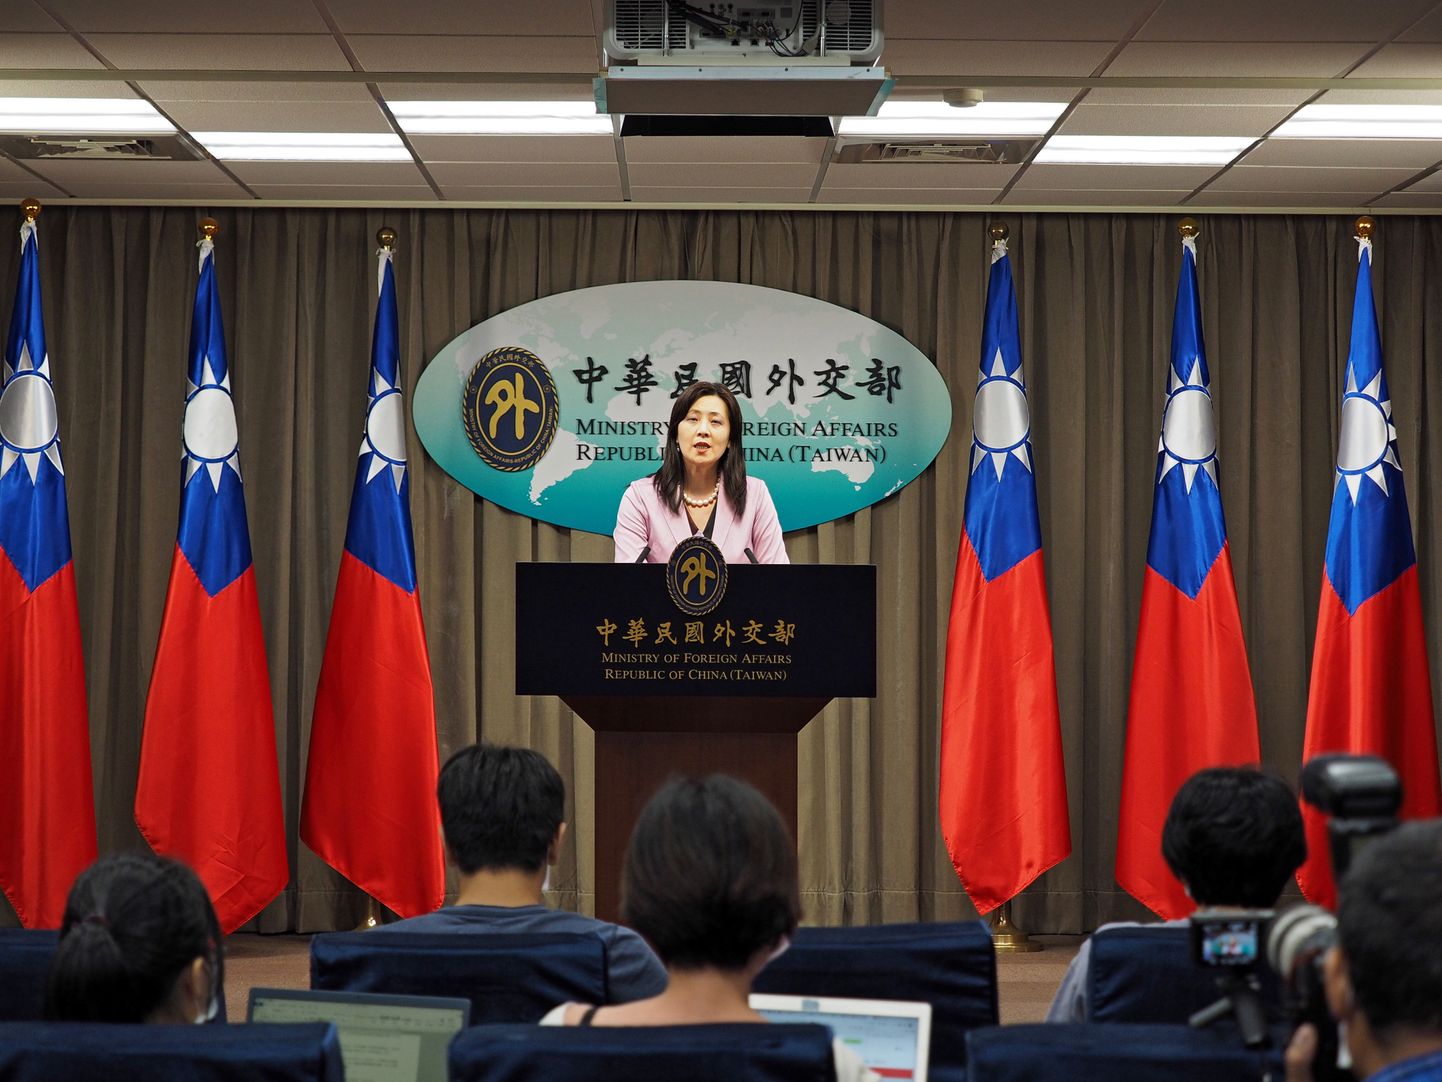 Taiwani välisministeeriumi pressiesindaja Joanne Ou pressikonverentsil Hiina sõjalennukite kohta Taiwani lähistel, Taipei 10. september 2020.